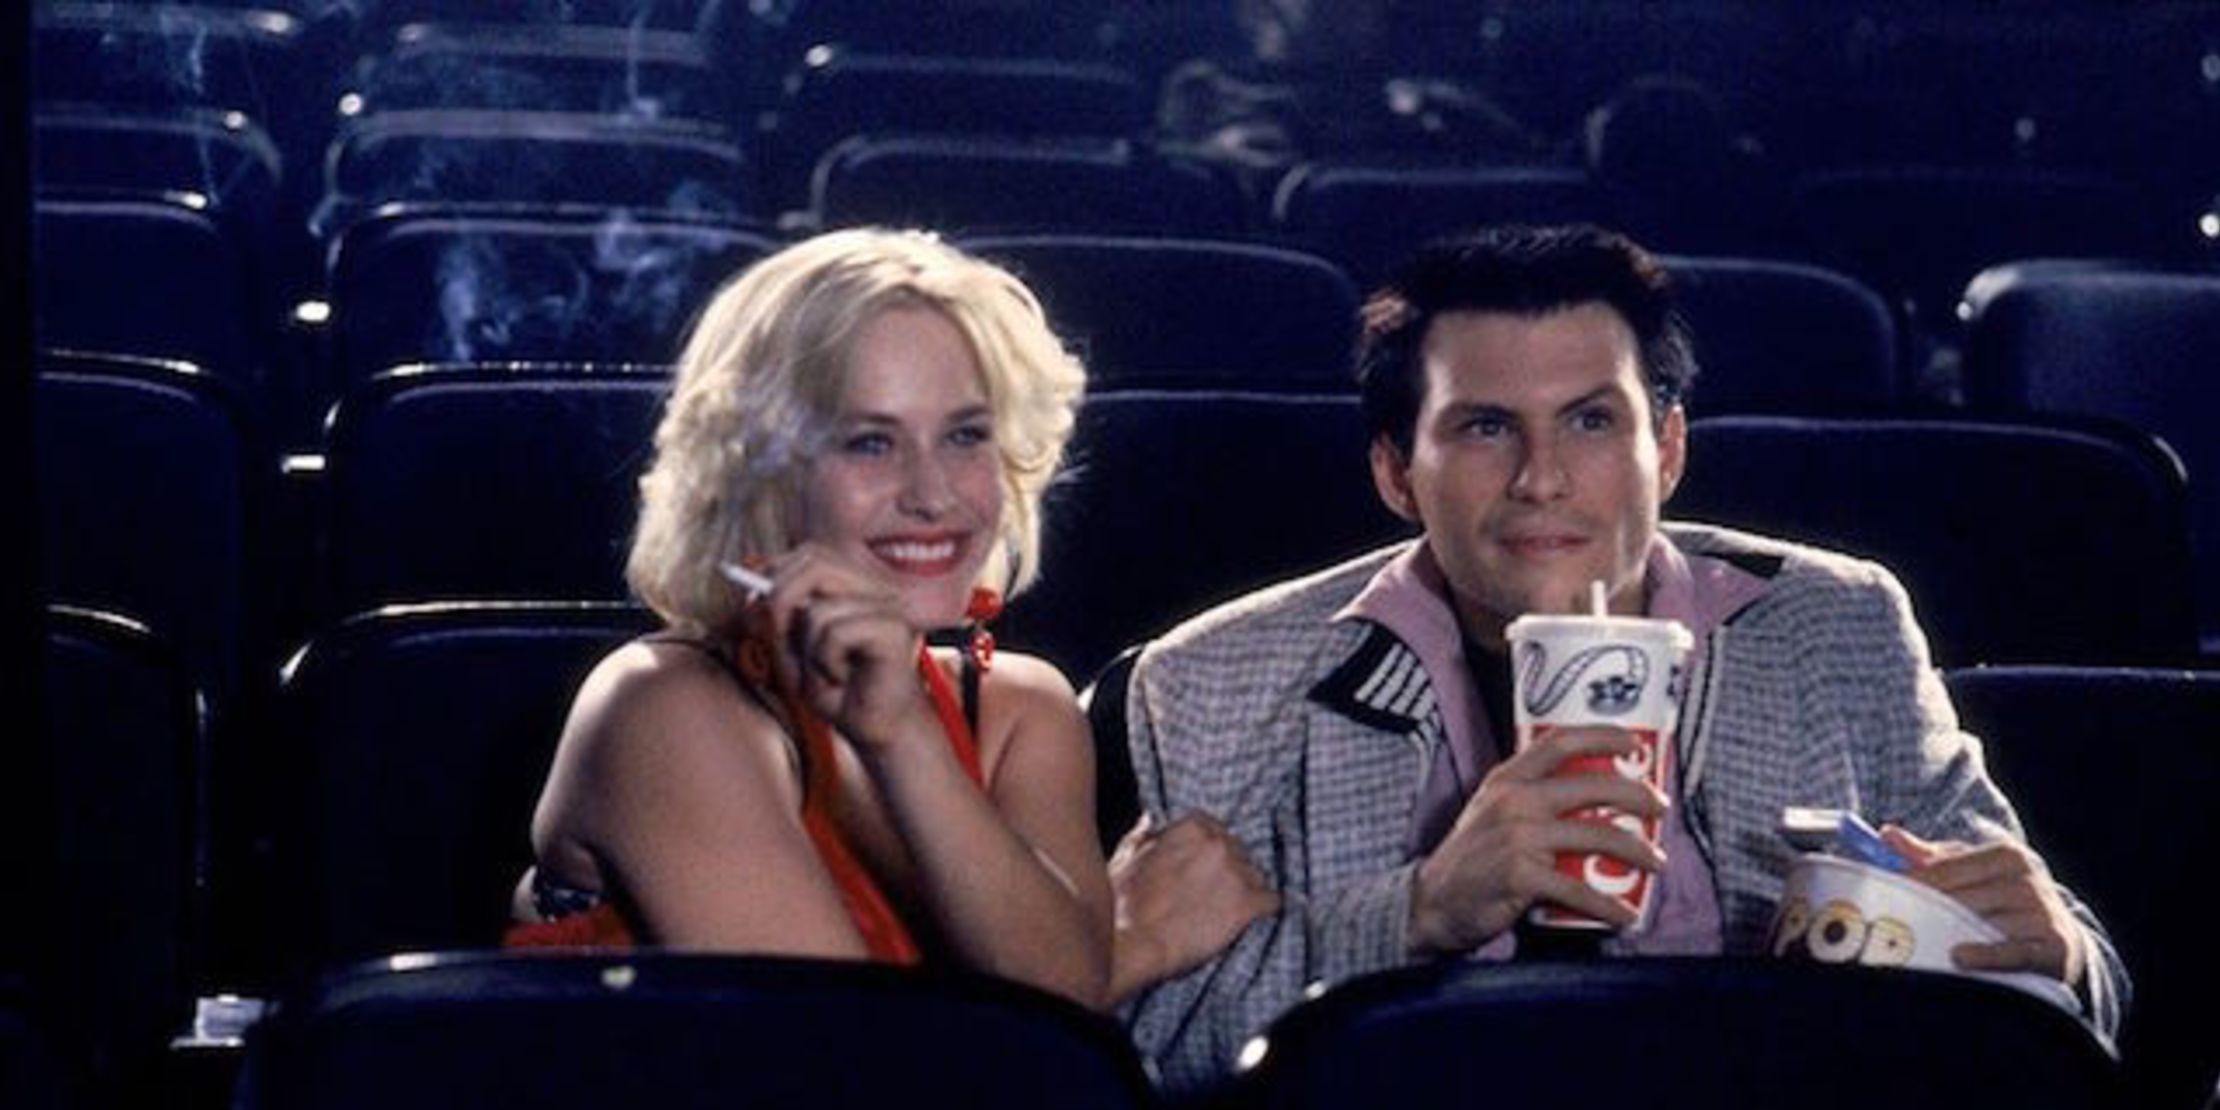 Christian Slater in movie theatre in True Romance